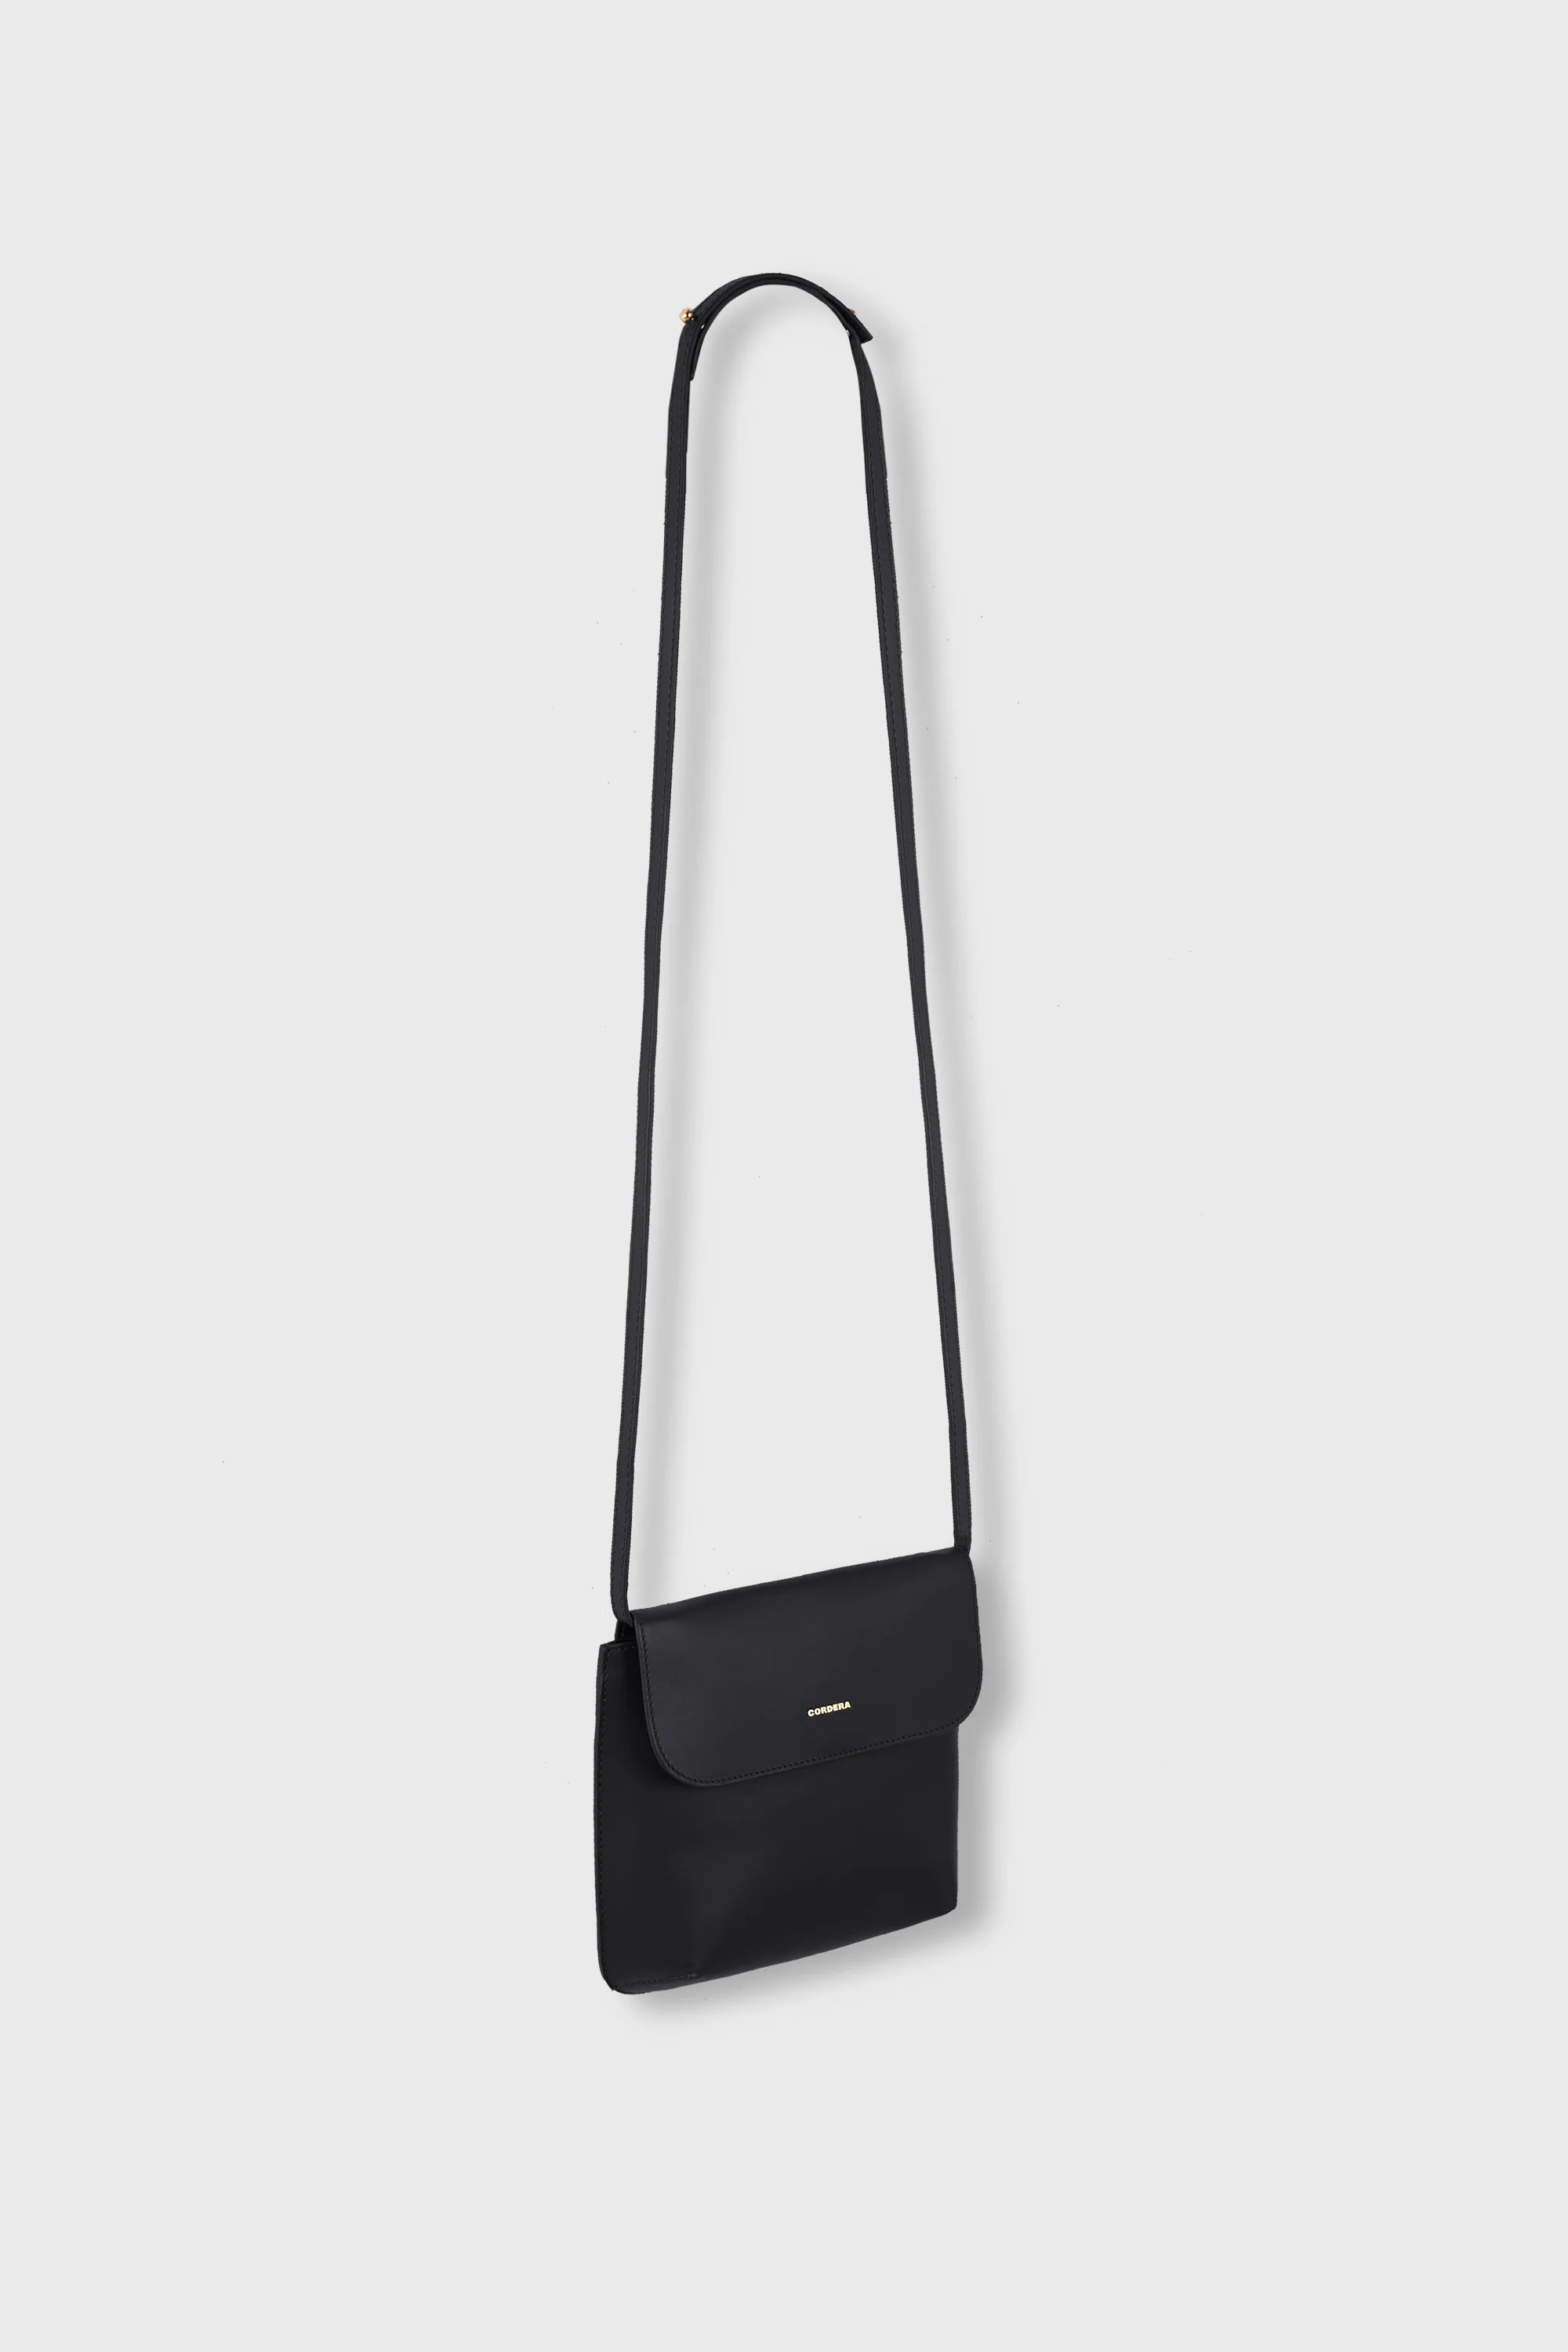 Cordera Flap Bag / Black